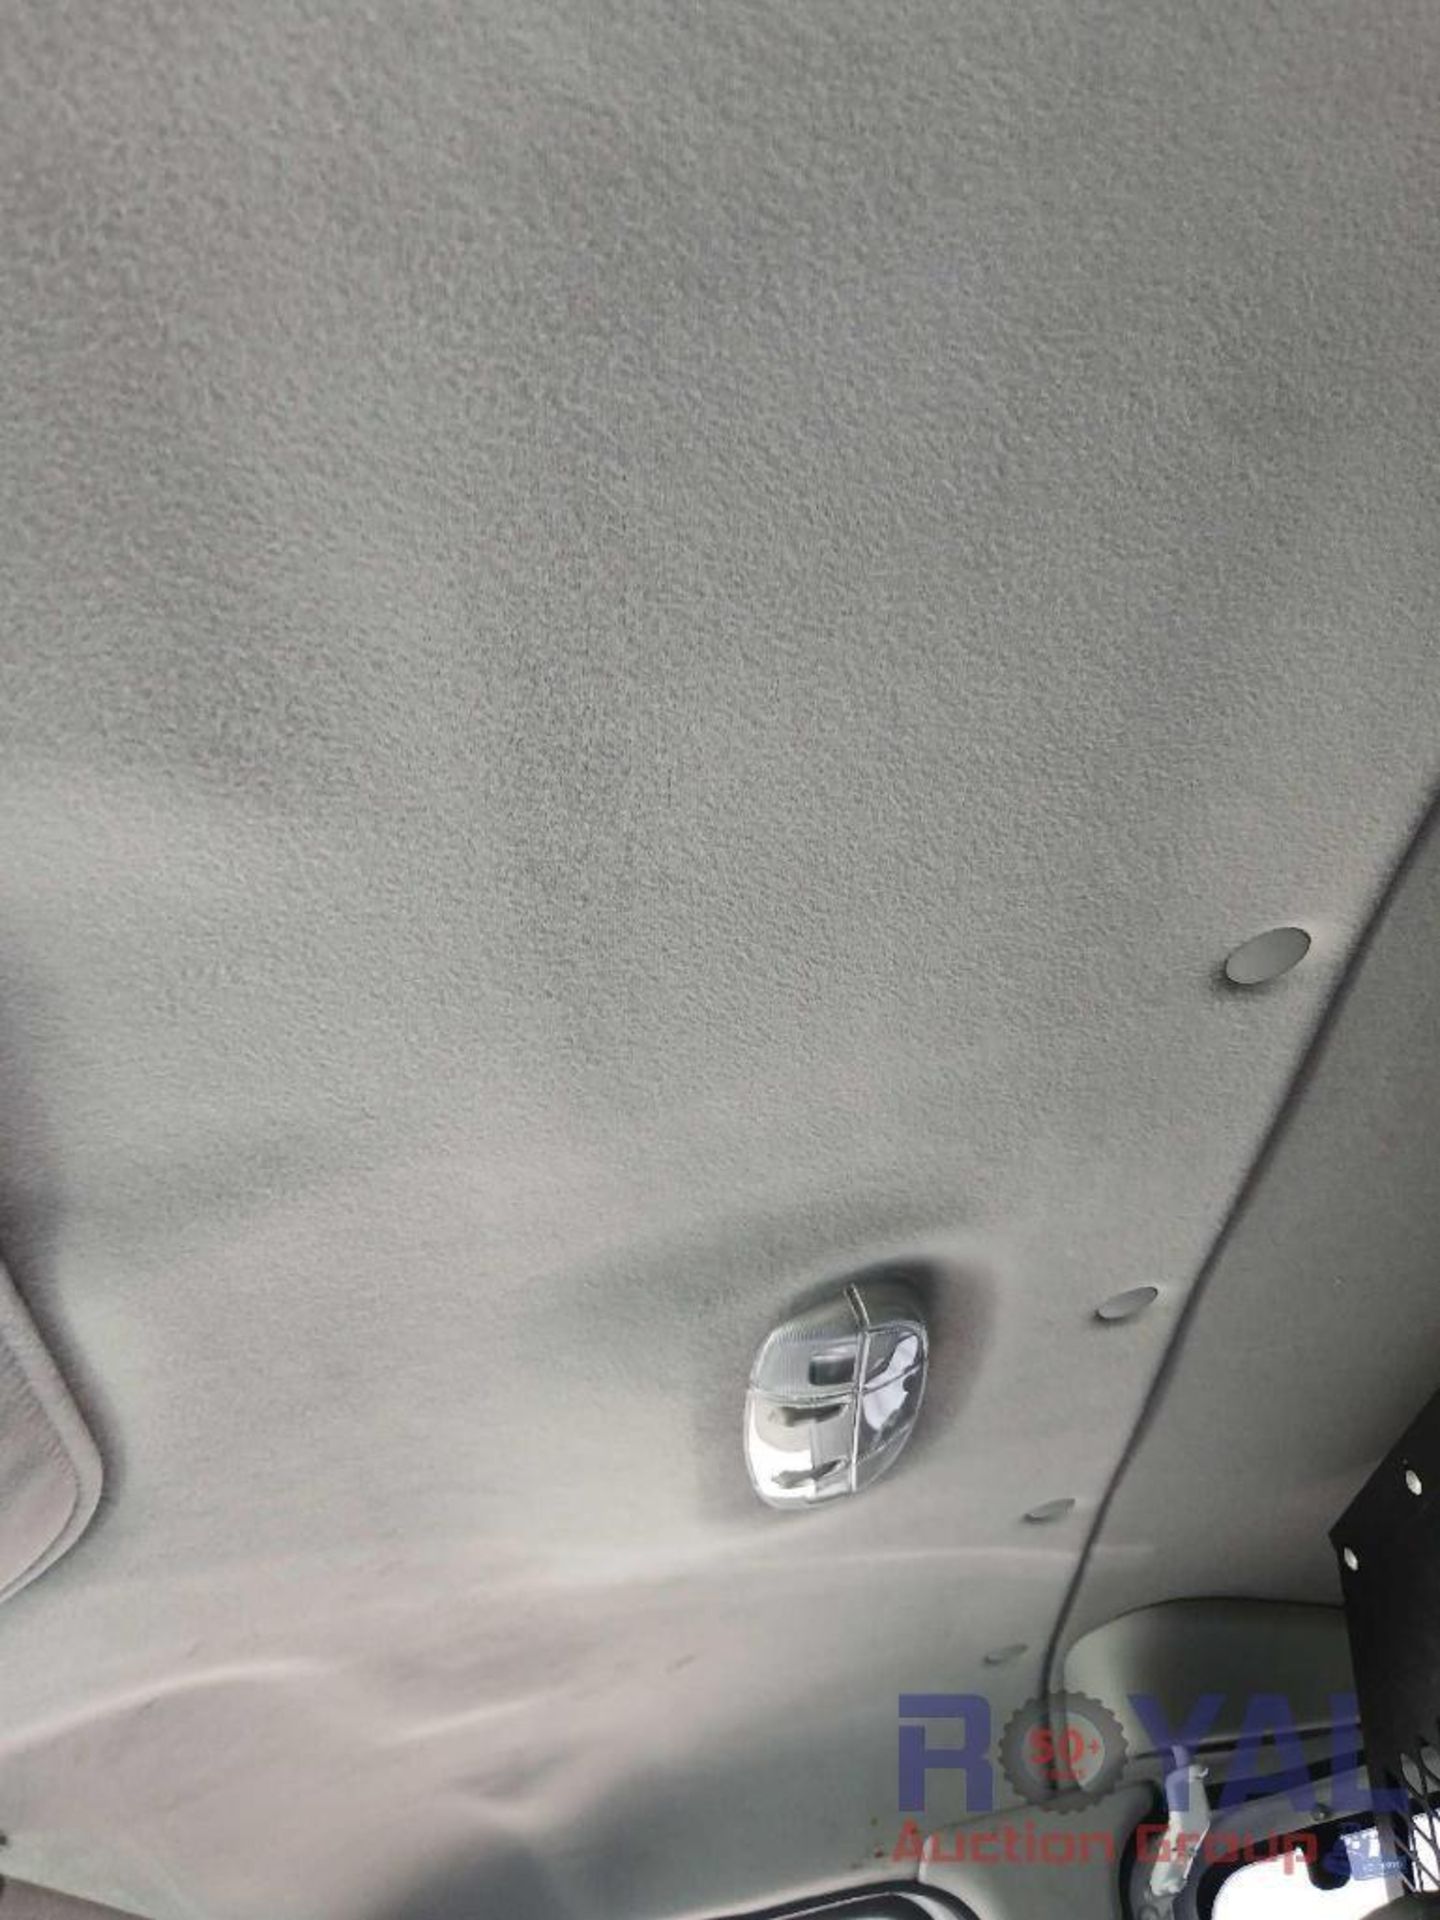 2014 Ford E350 Econoline Cargo Van - Image 19 of 25